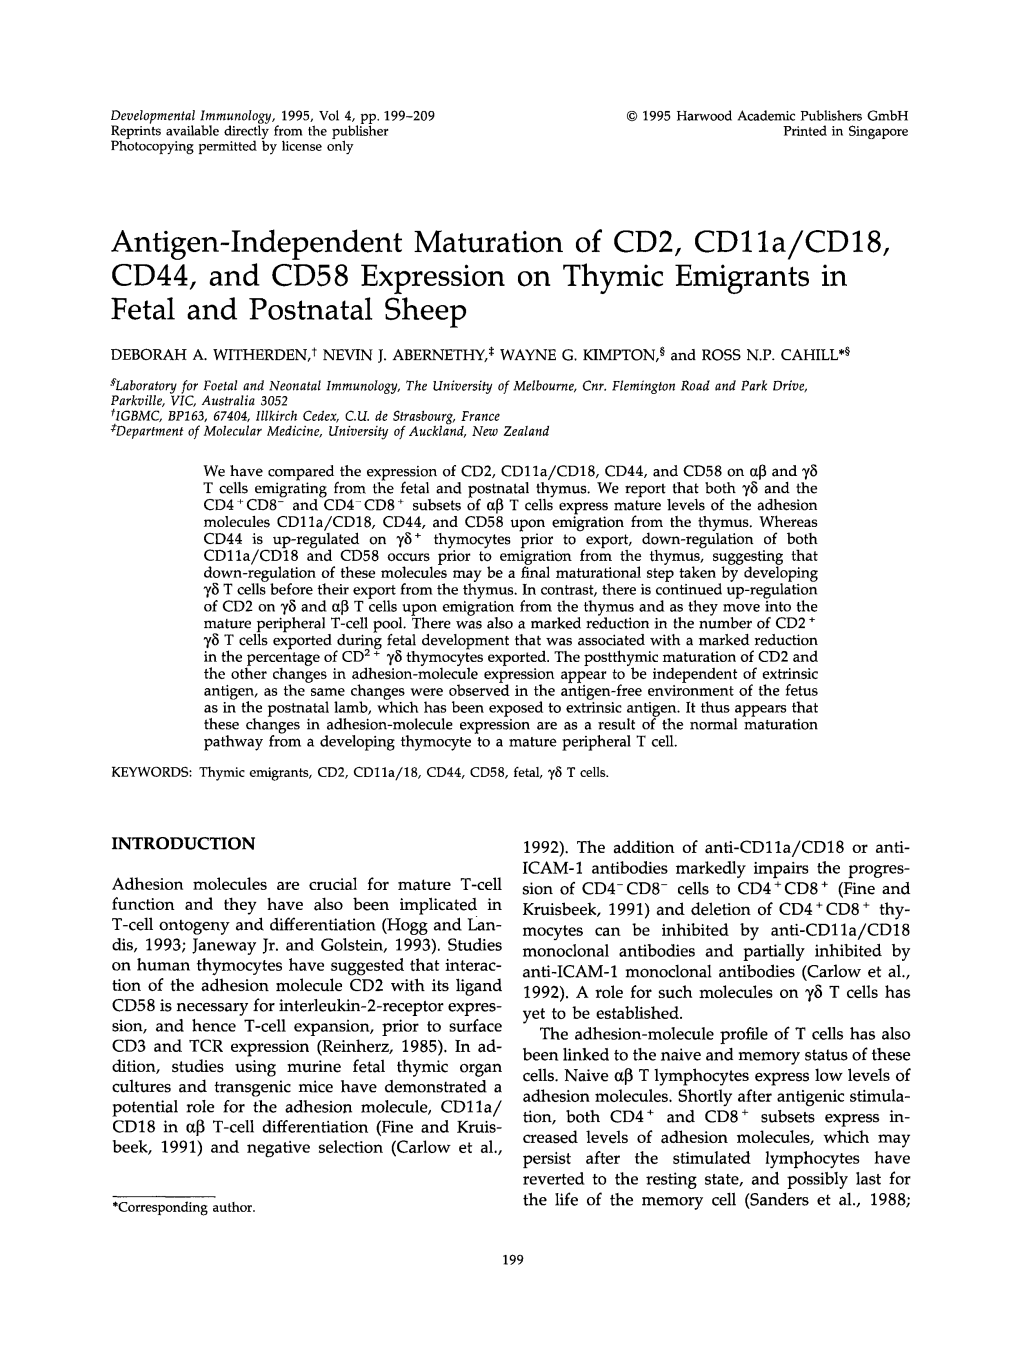 Antigen-Independent Maturation of CD2, CD1 La/CD18